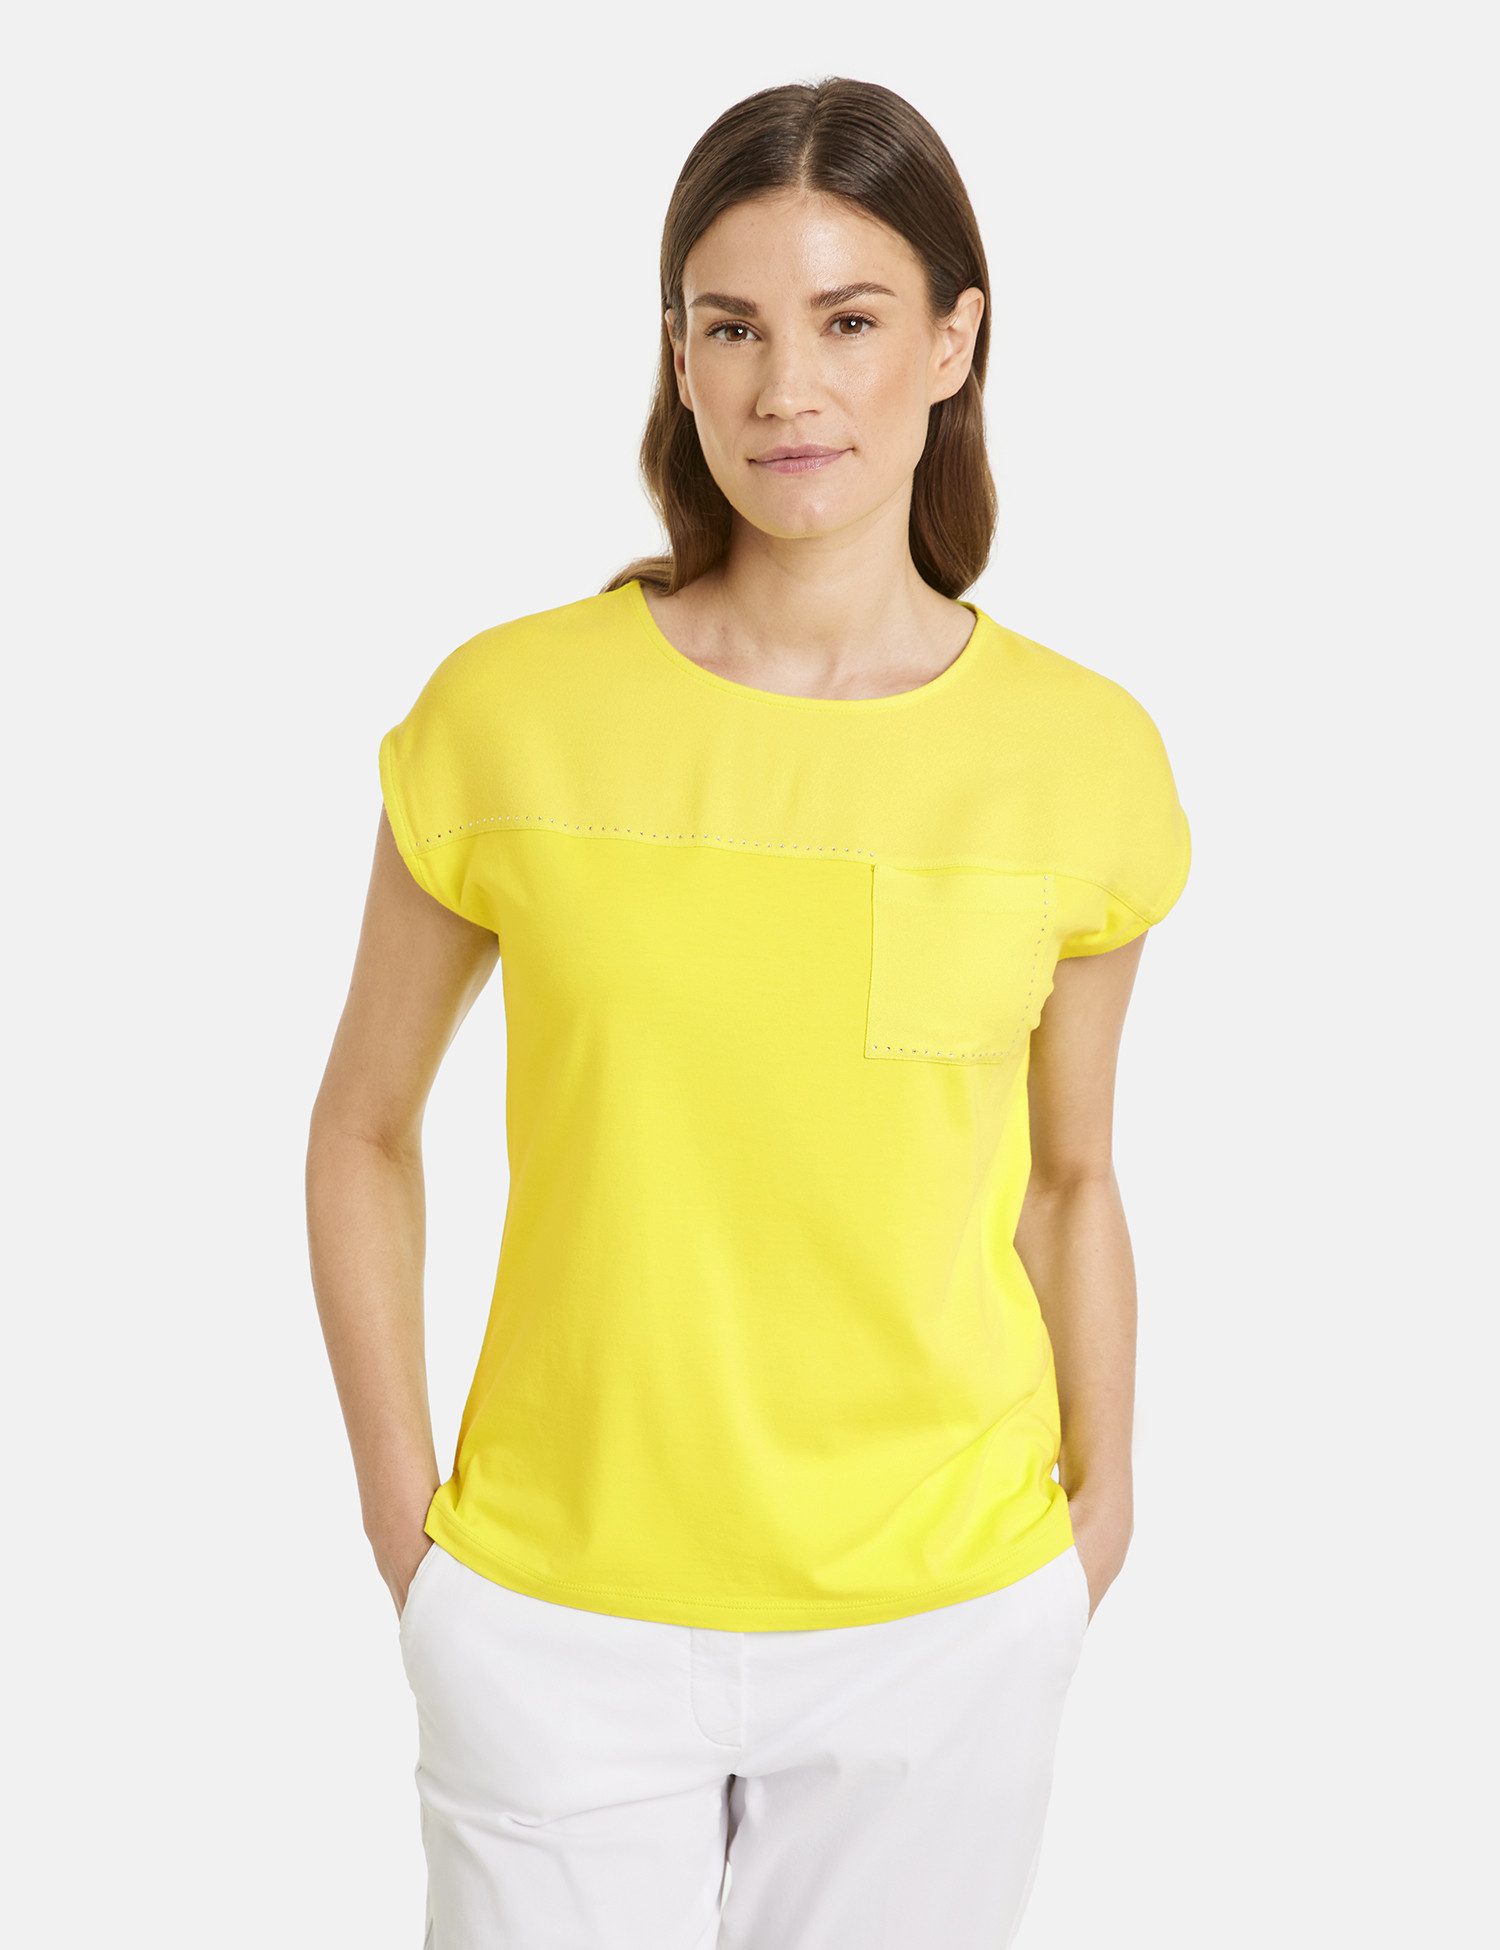 GERRY WEBER Kurzarmshirt T-Shirt mit Material-Patch und Ziersteinchen